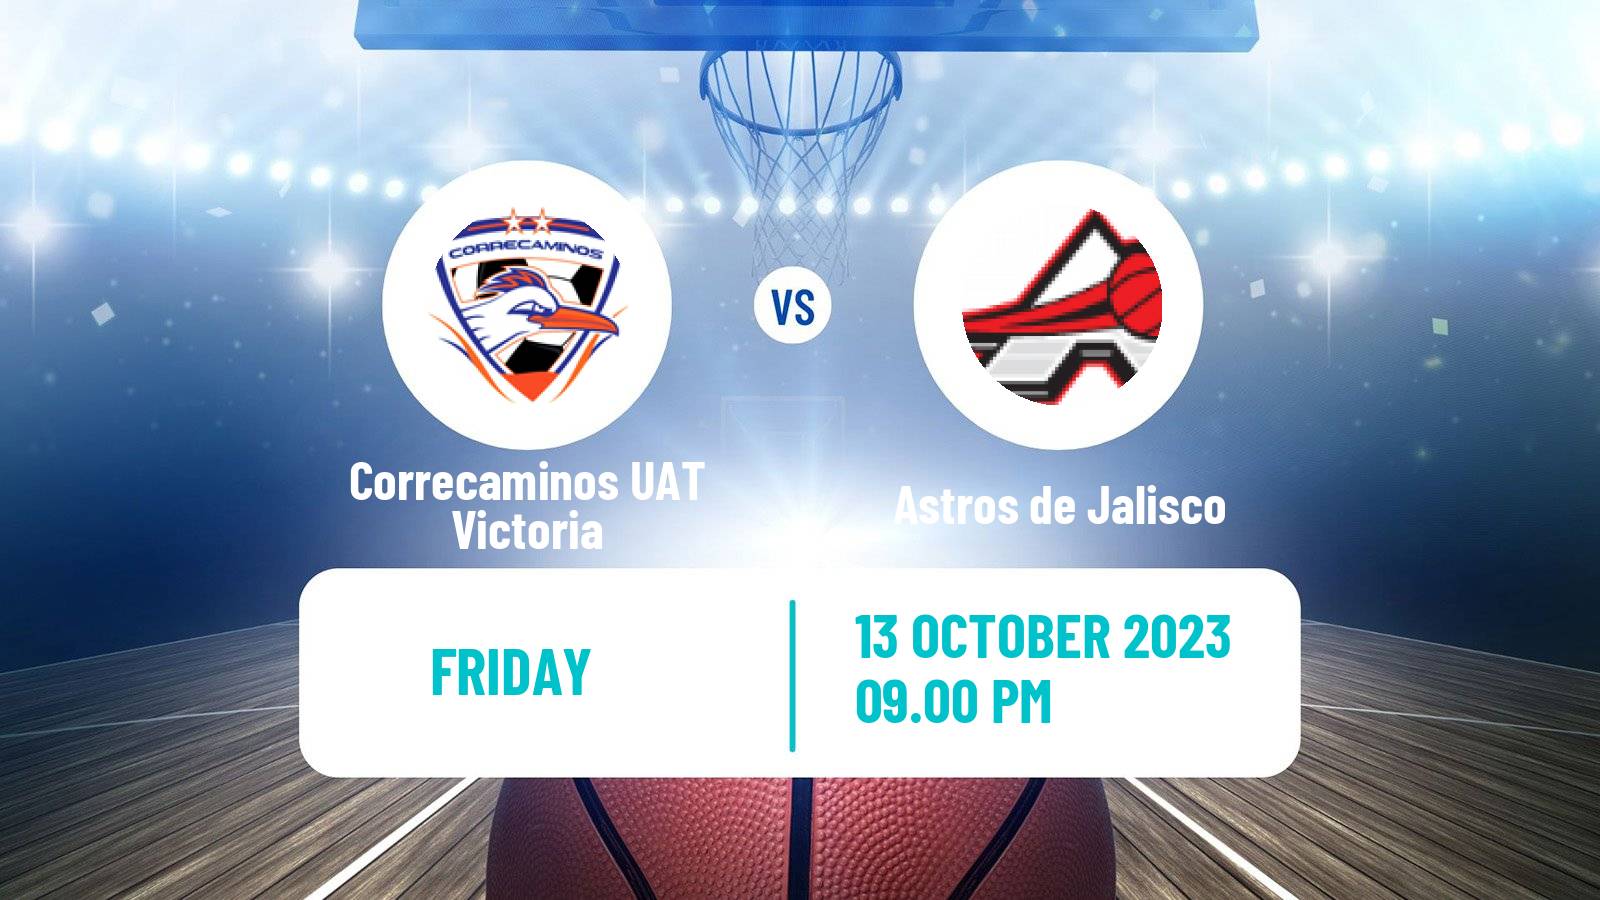 Basketball Mexican LNBP Correcaminos UAT Victoria - Astros de Jalisco